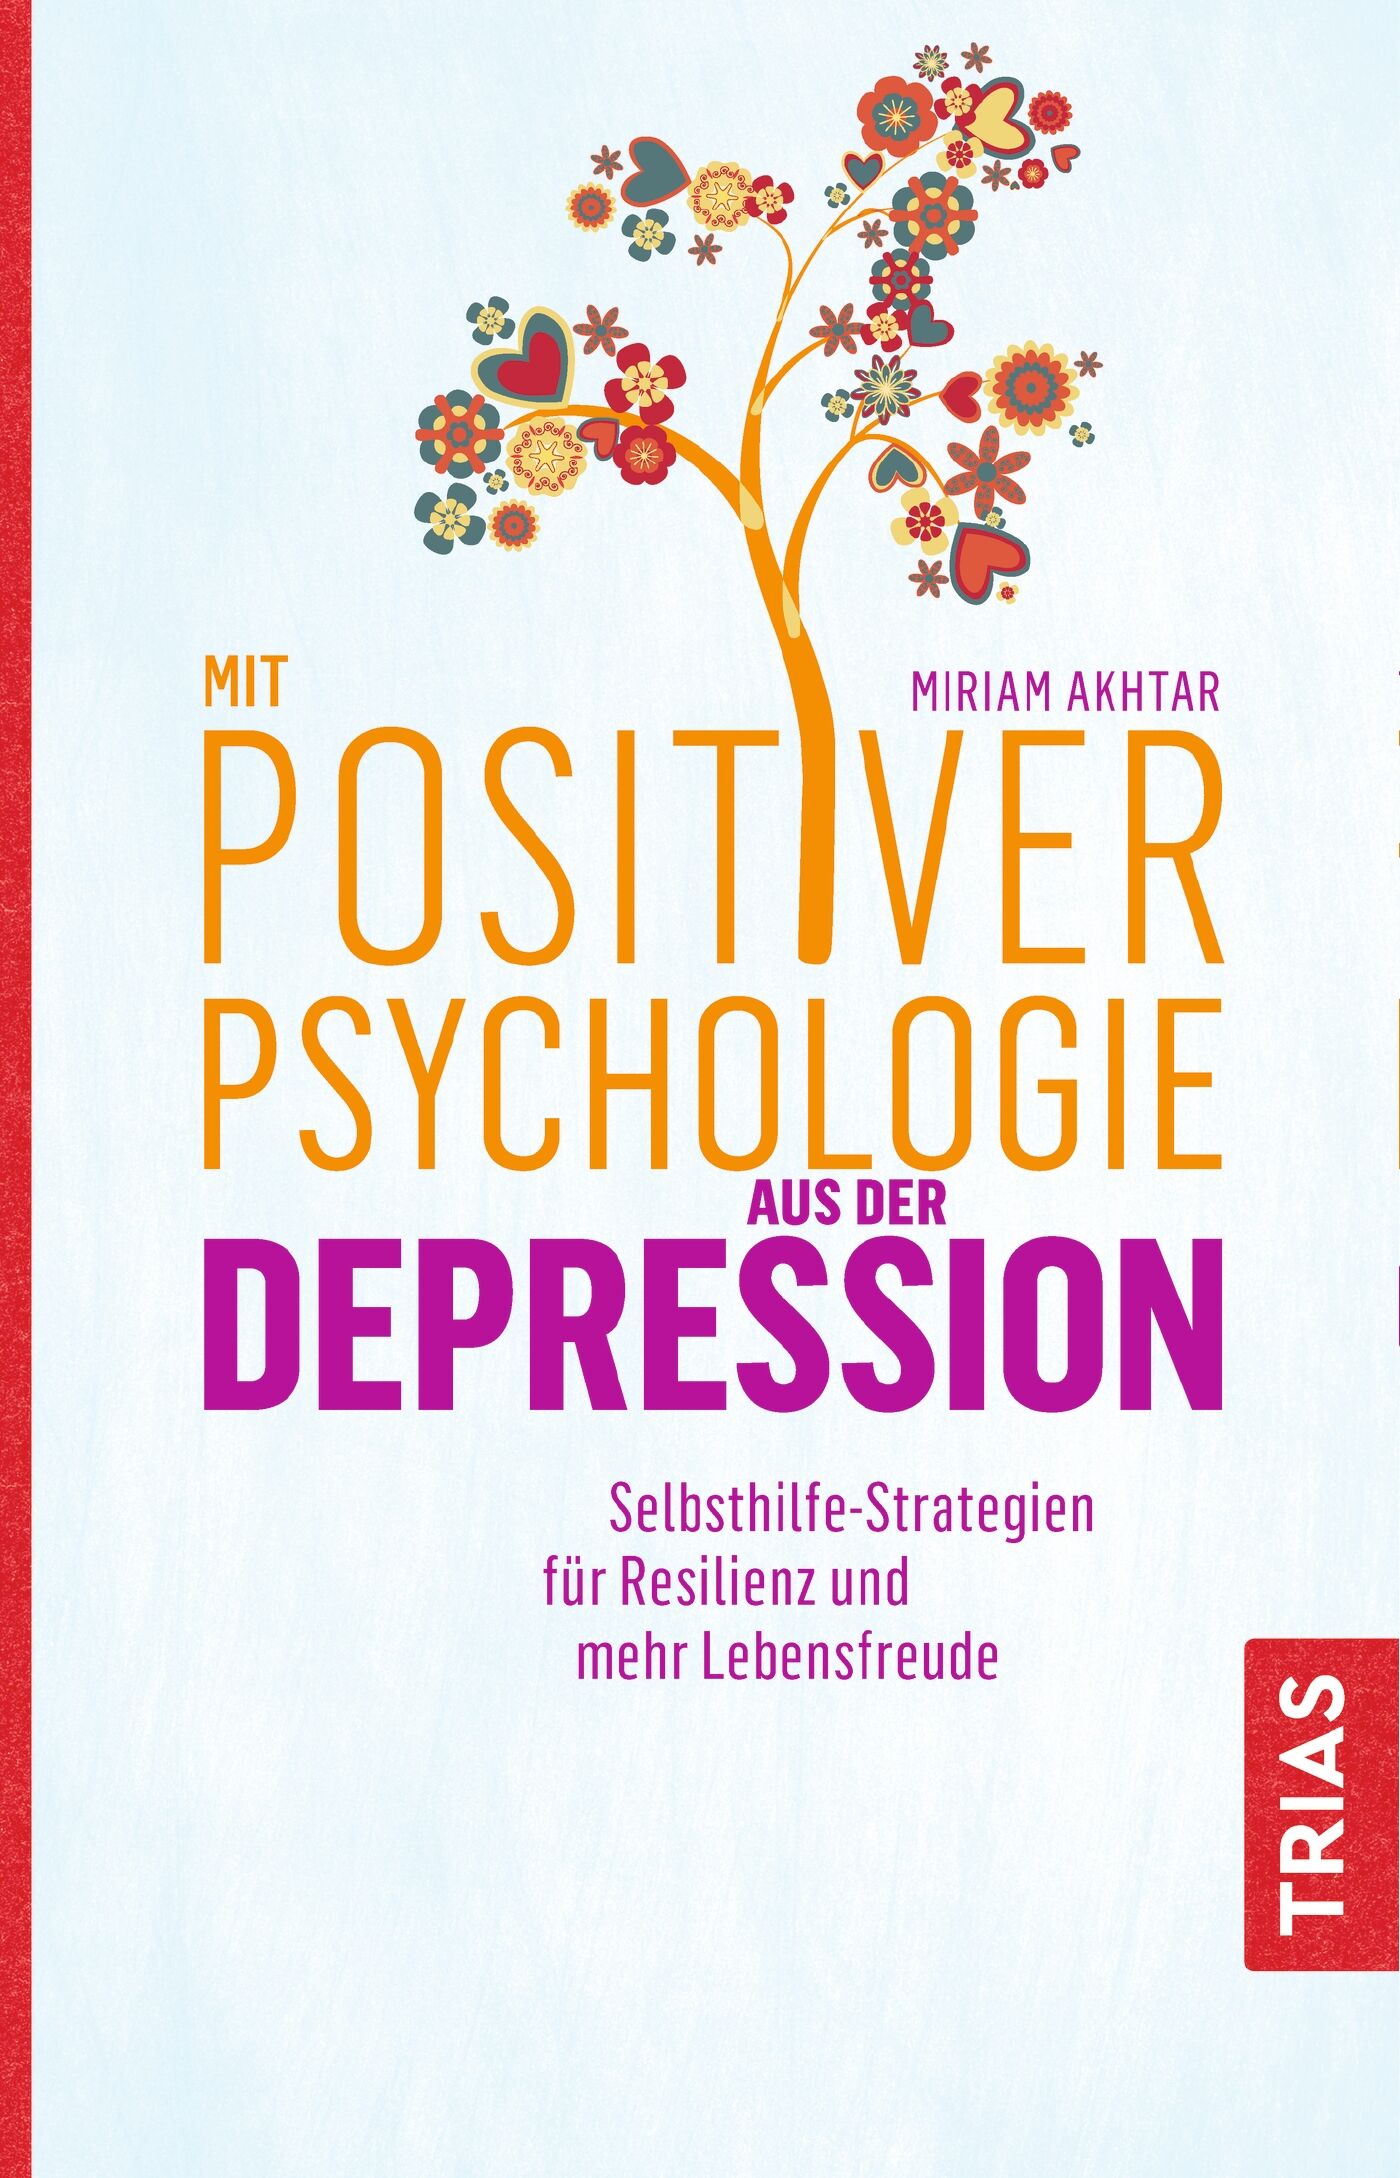 Mit Positiver Psychologie aus der Depression, 9783432108001